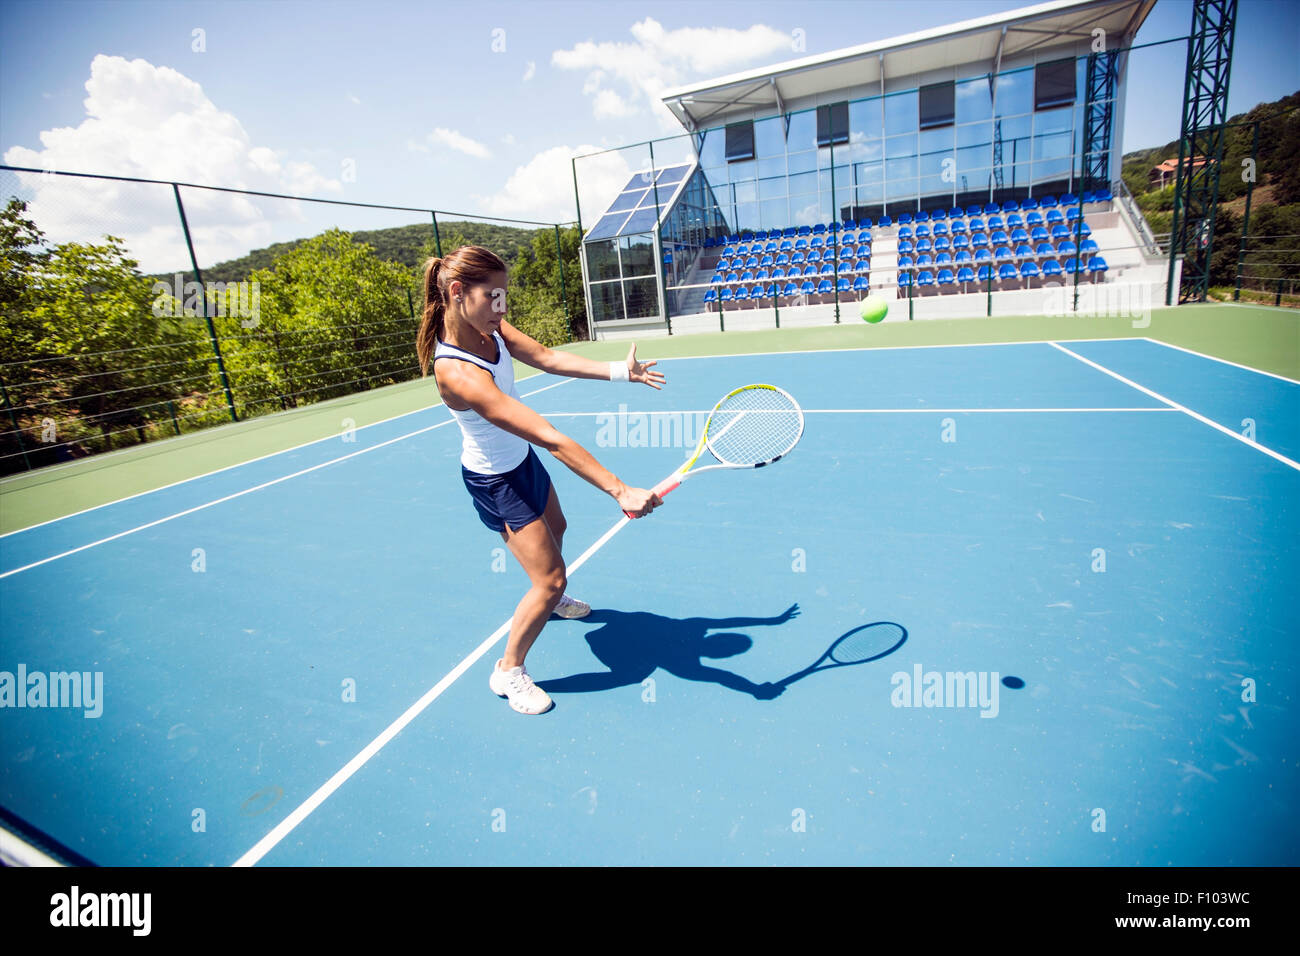 Tennis player effectuant un drop shot sur une belle cour bleu Banque D'Images